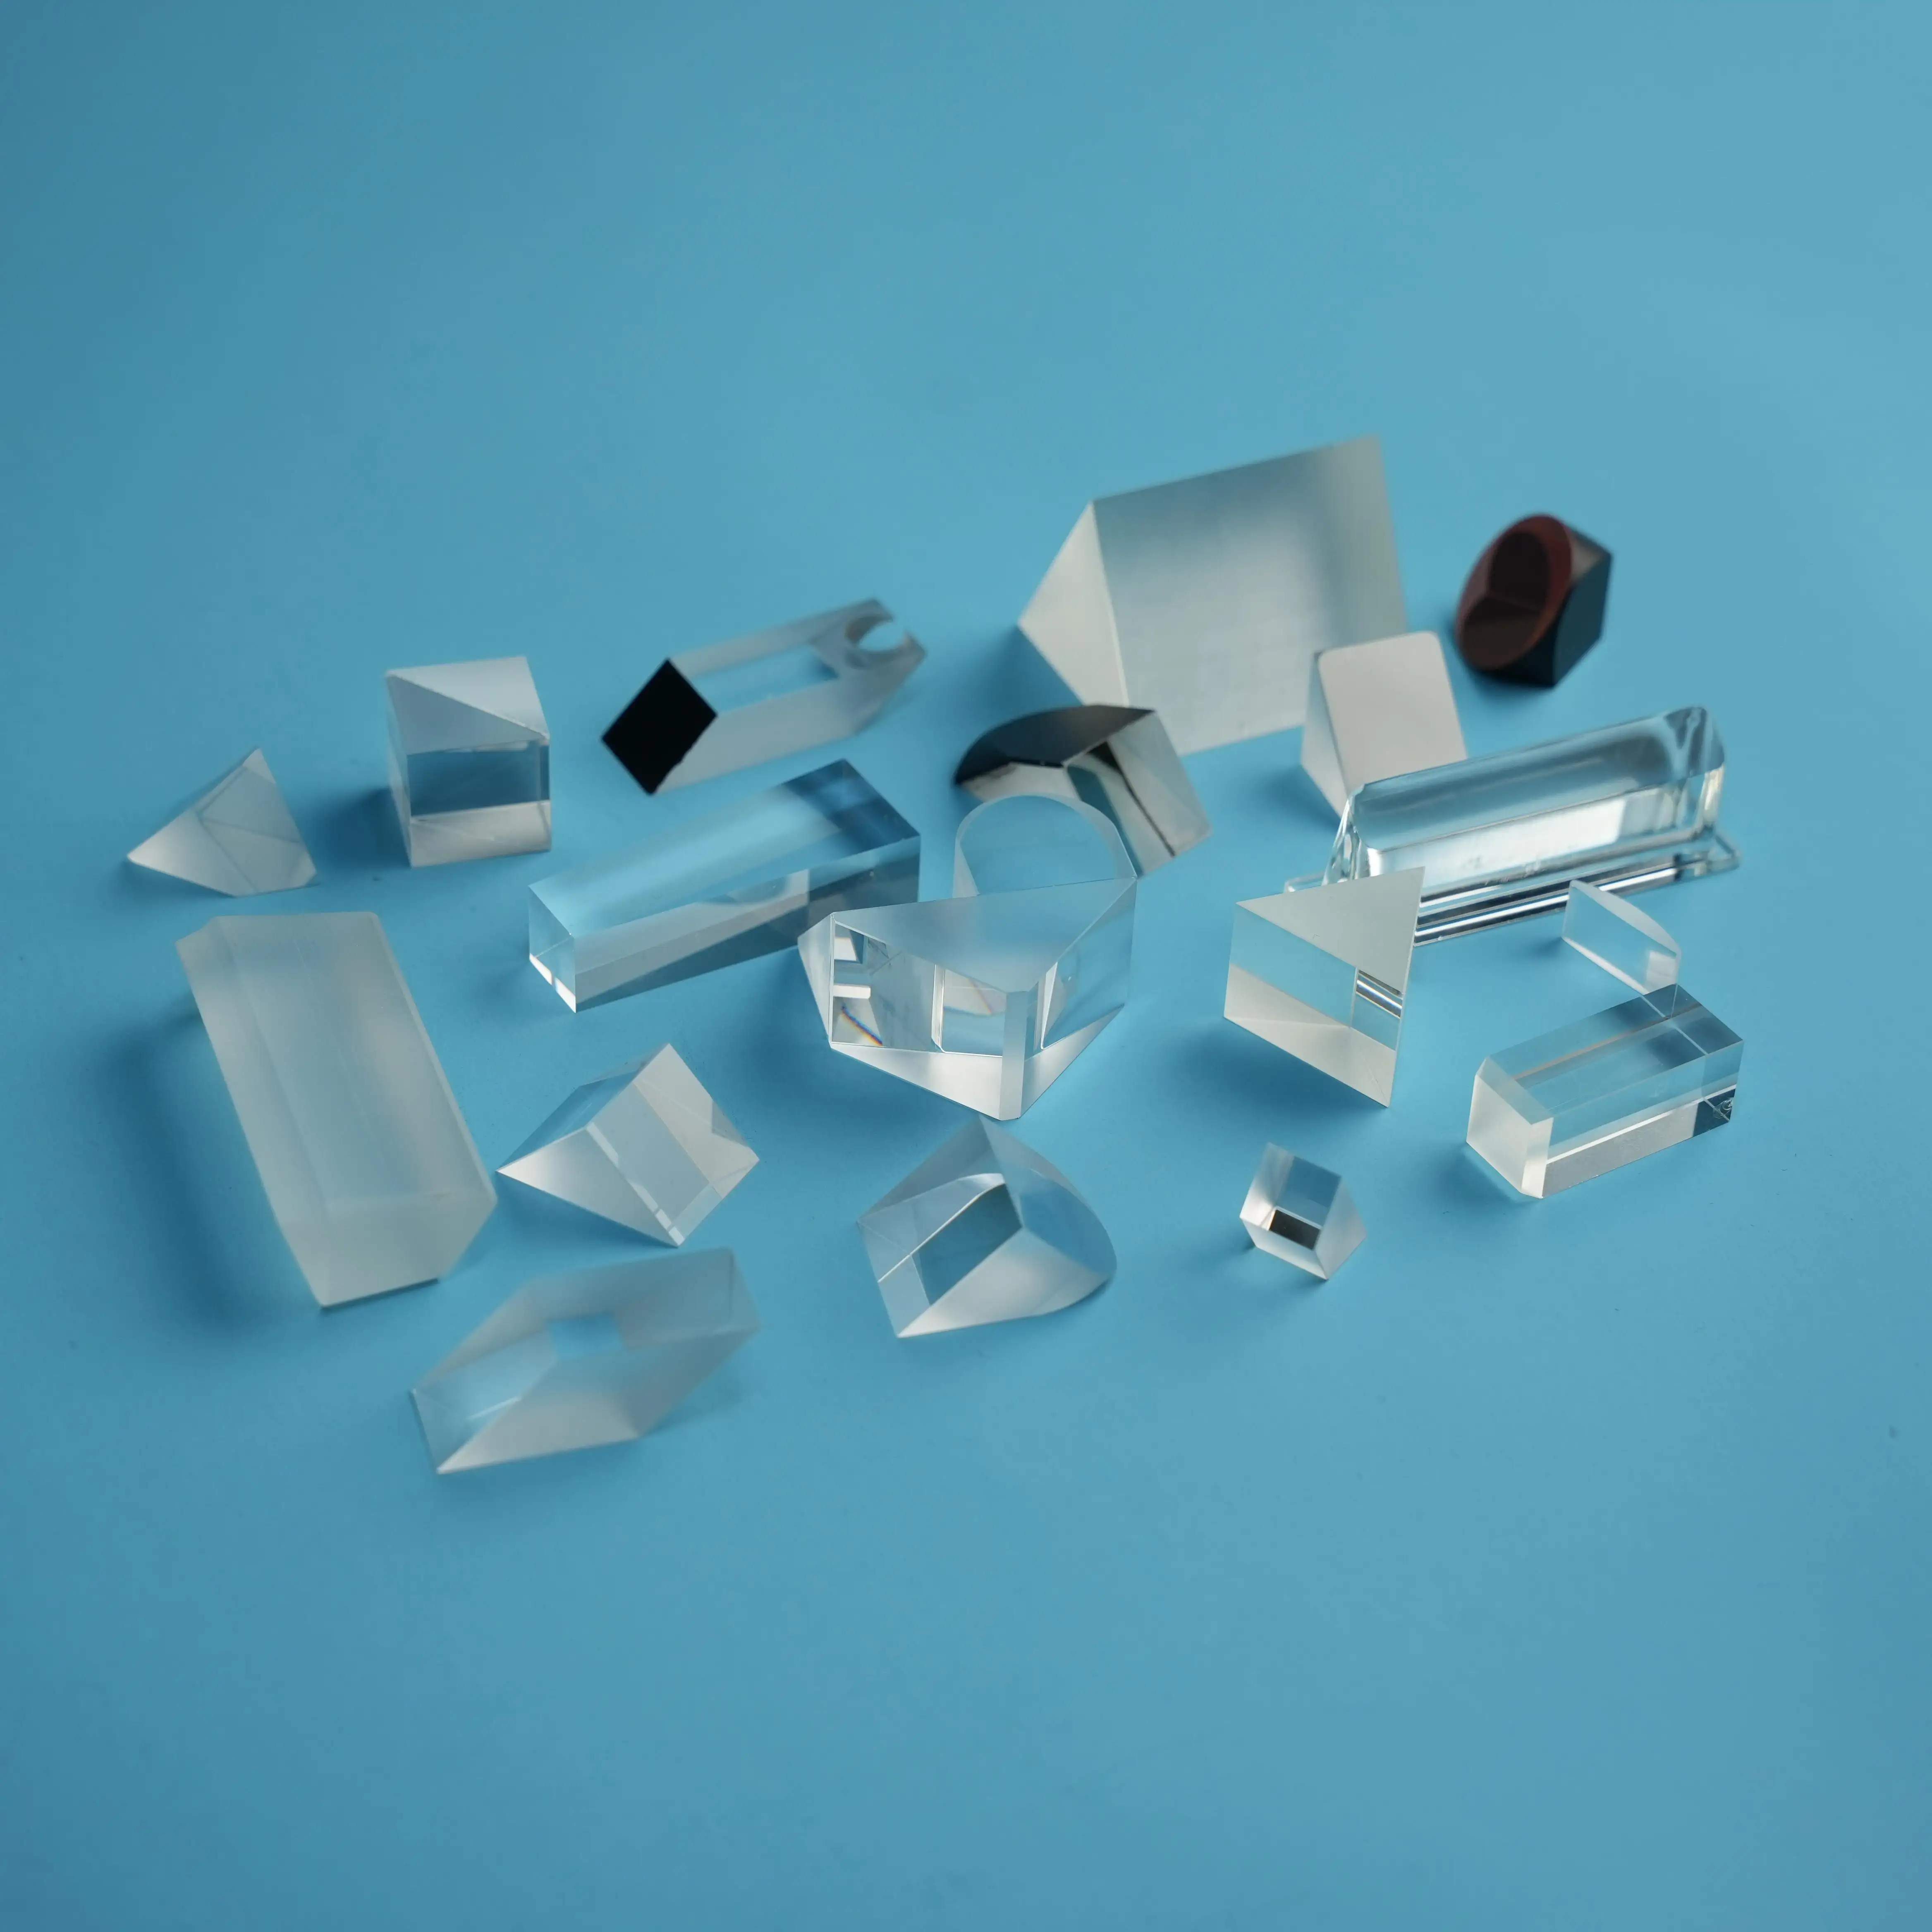 Prisma de vidro prisma de ângulo reto equilateral de linha de alta potência revestida de sílica fundida UV personalizada K9 Bk7 do fabricante